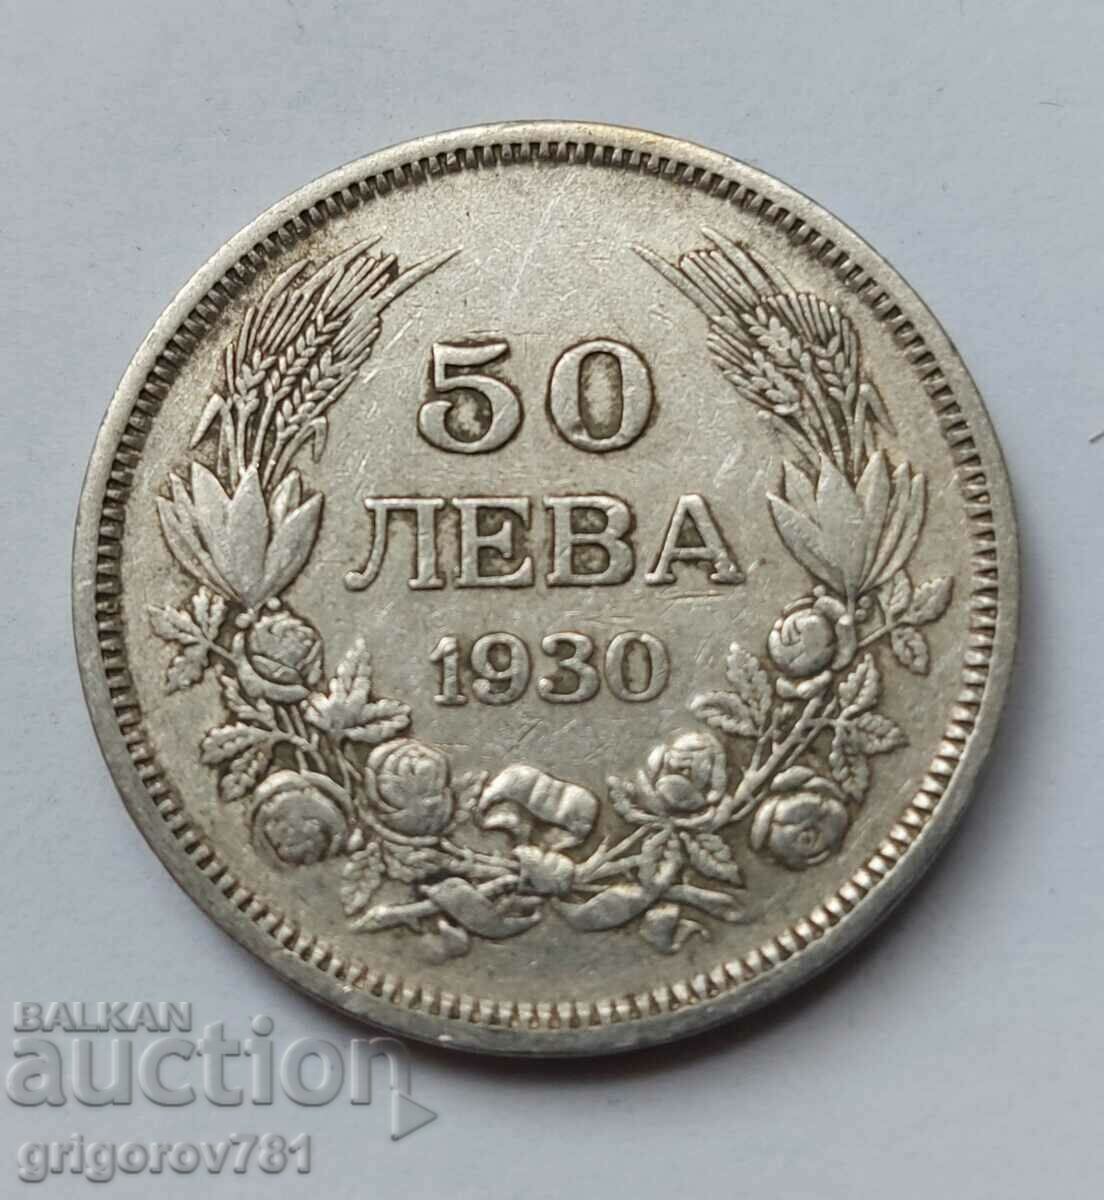 50 leva argint Bulgaria 1930 - monedă de argint #63